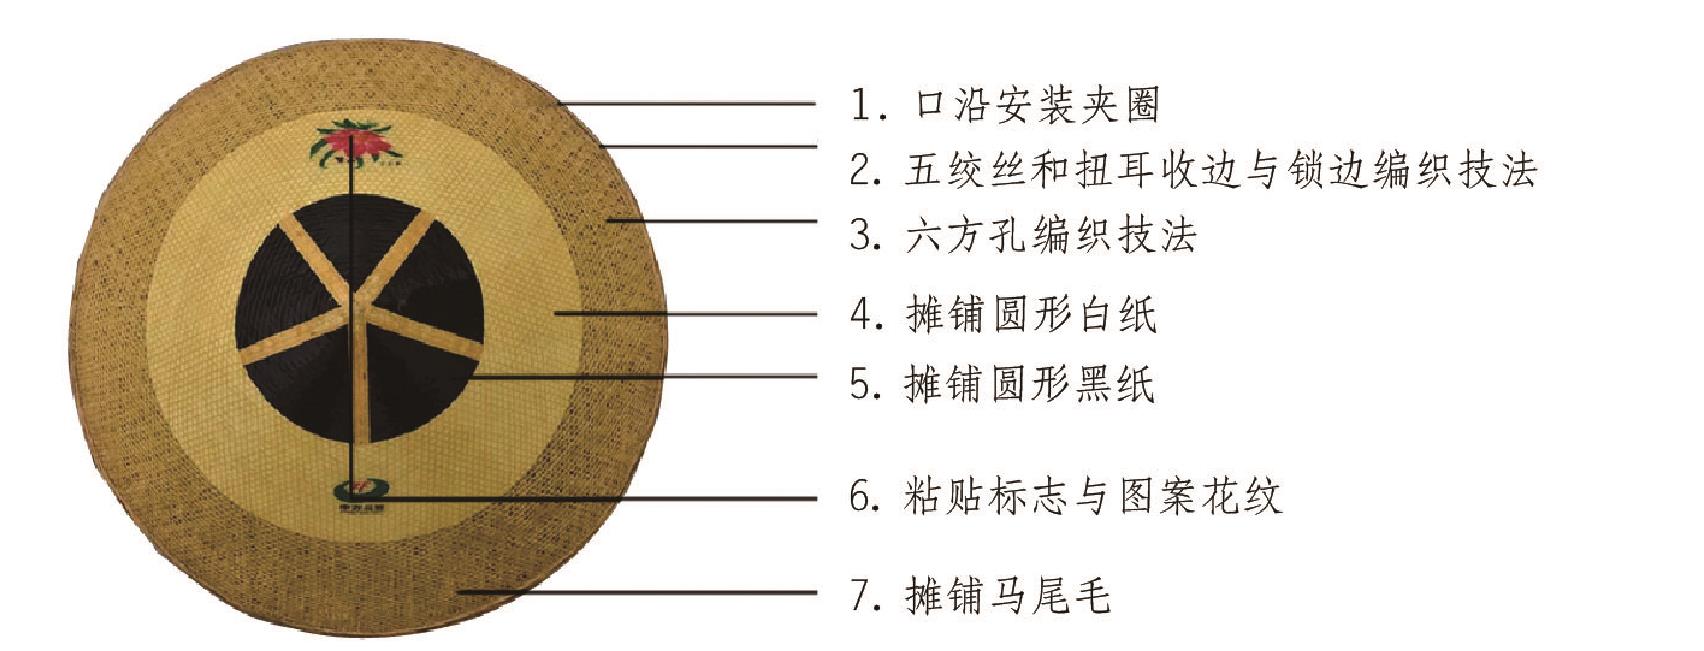 (三)怀化市中方斗笠编作步骤与编织技法图解